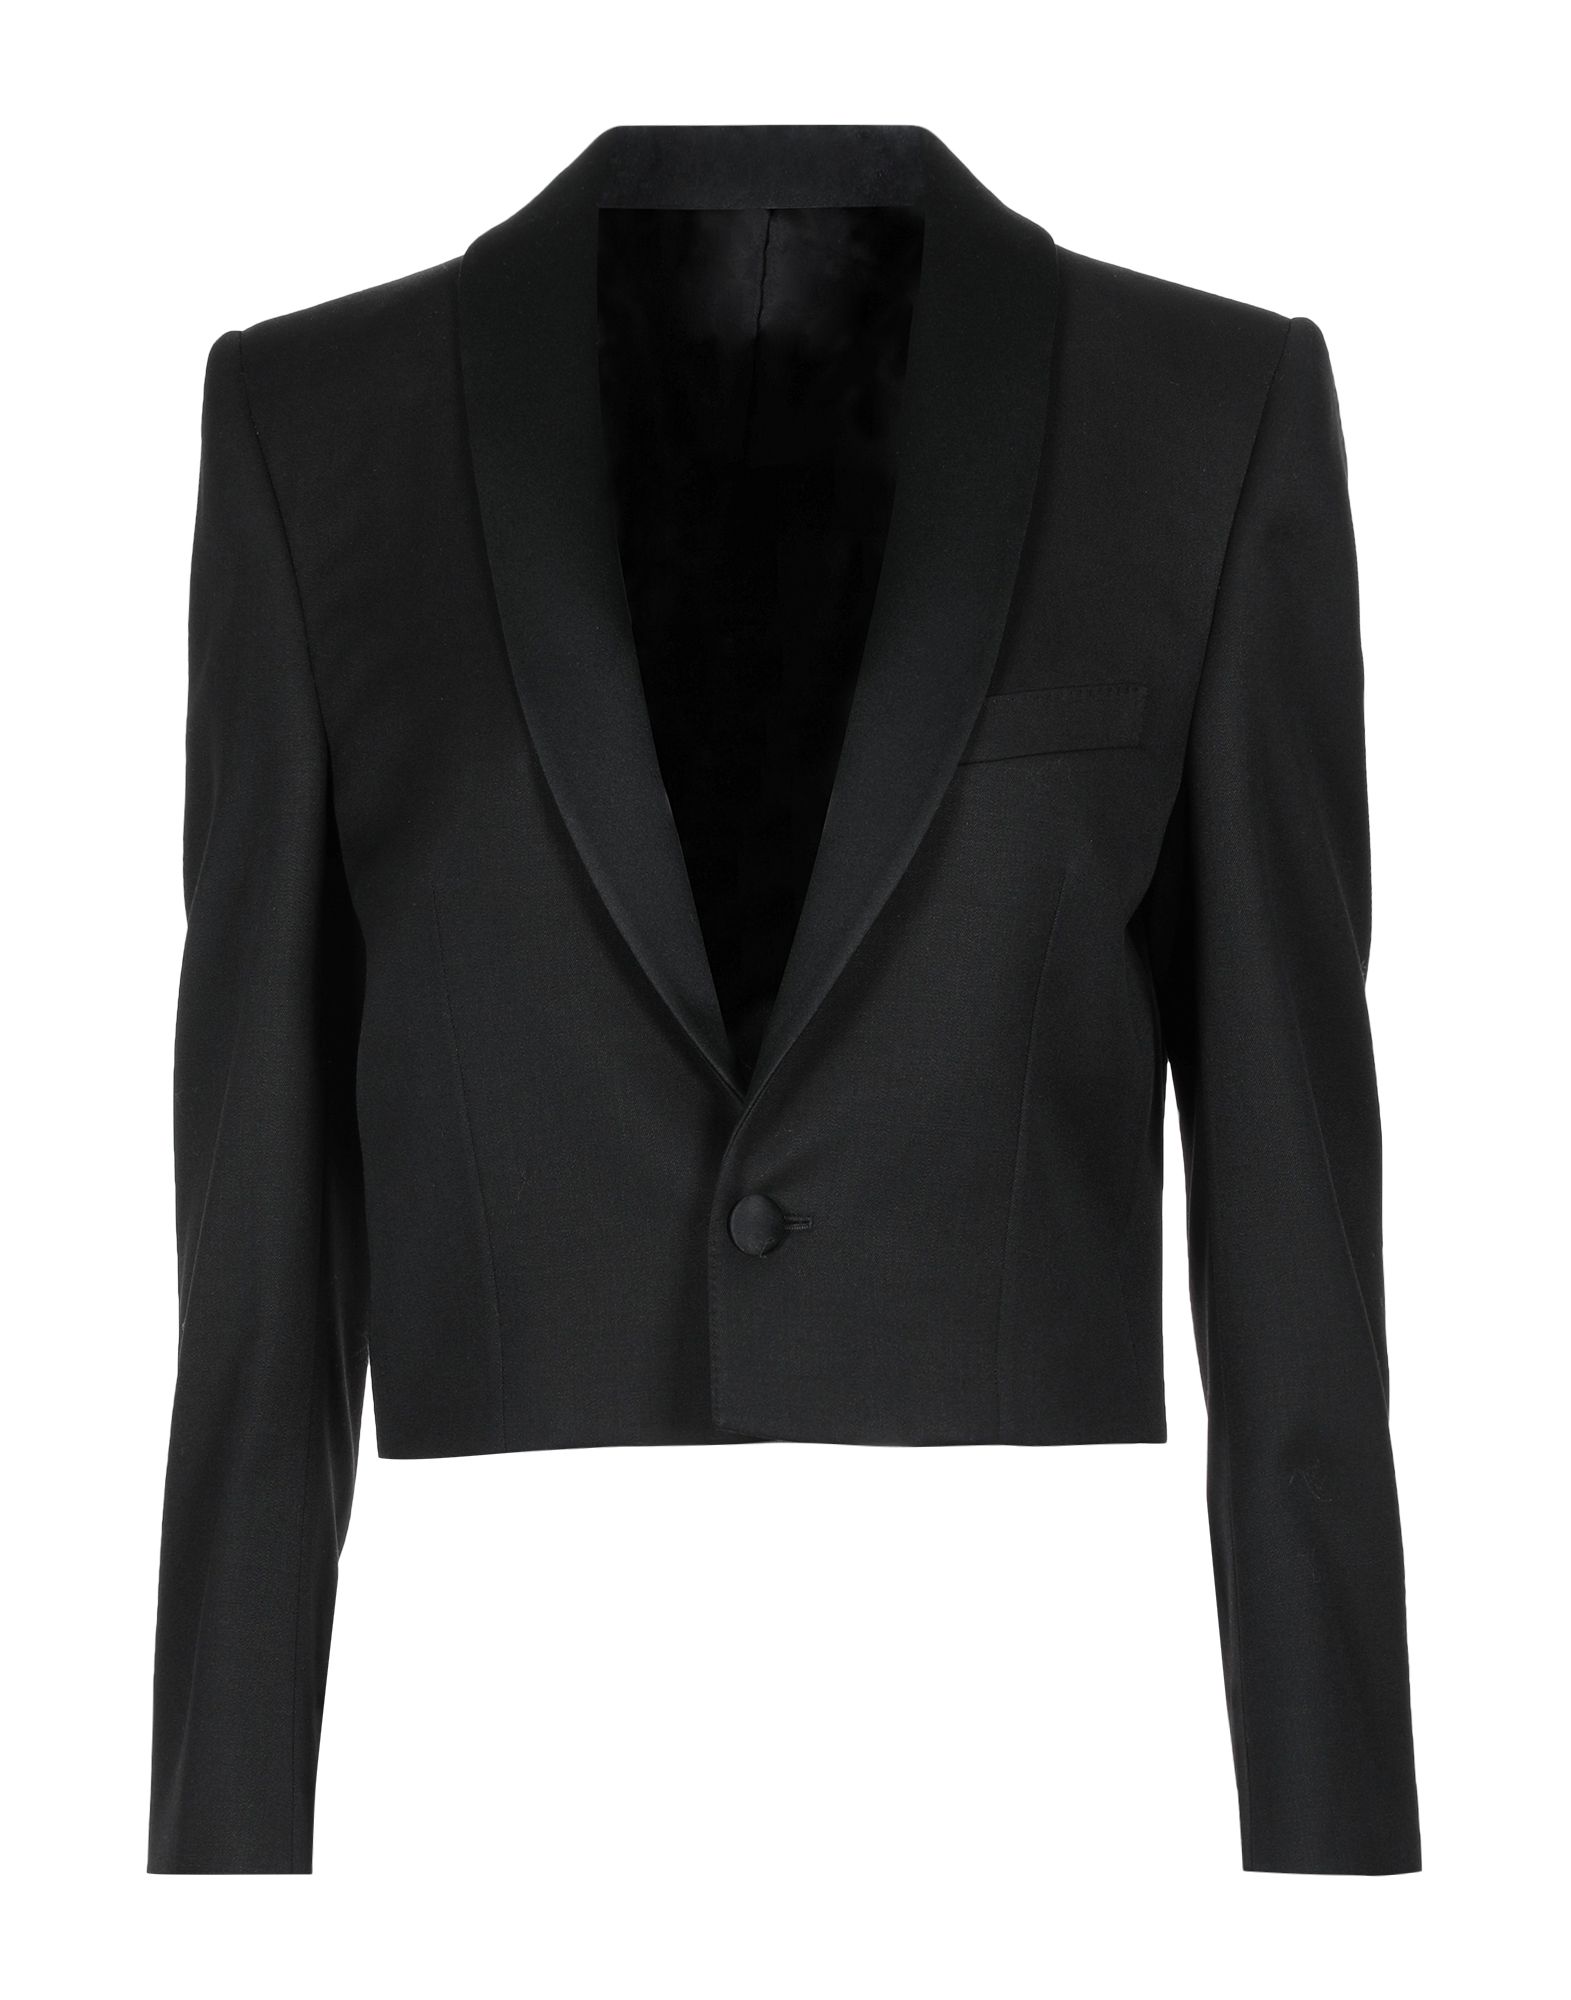 CELINE Suit jackets - Item 49571546